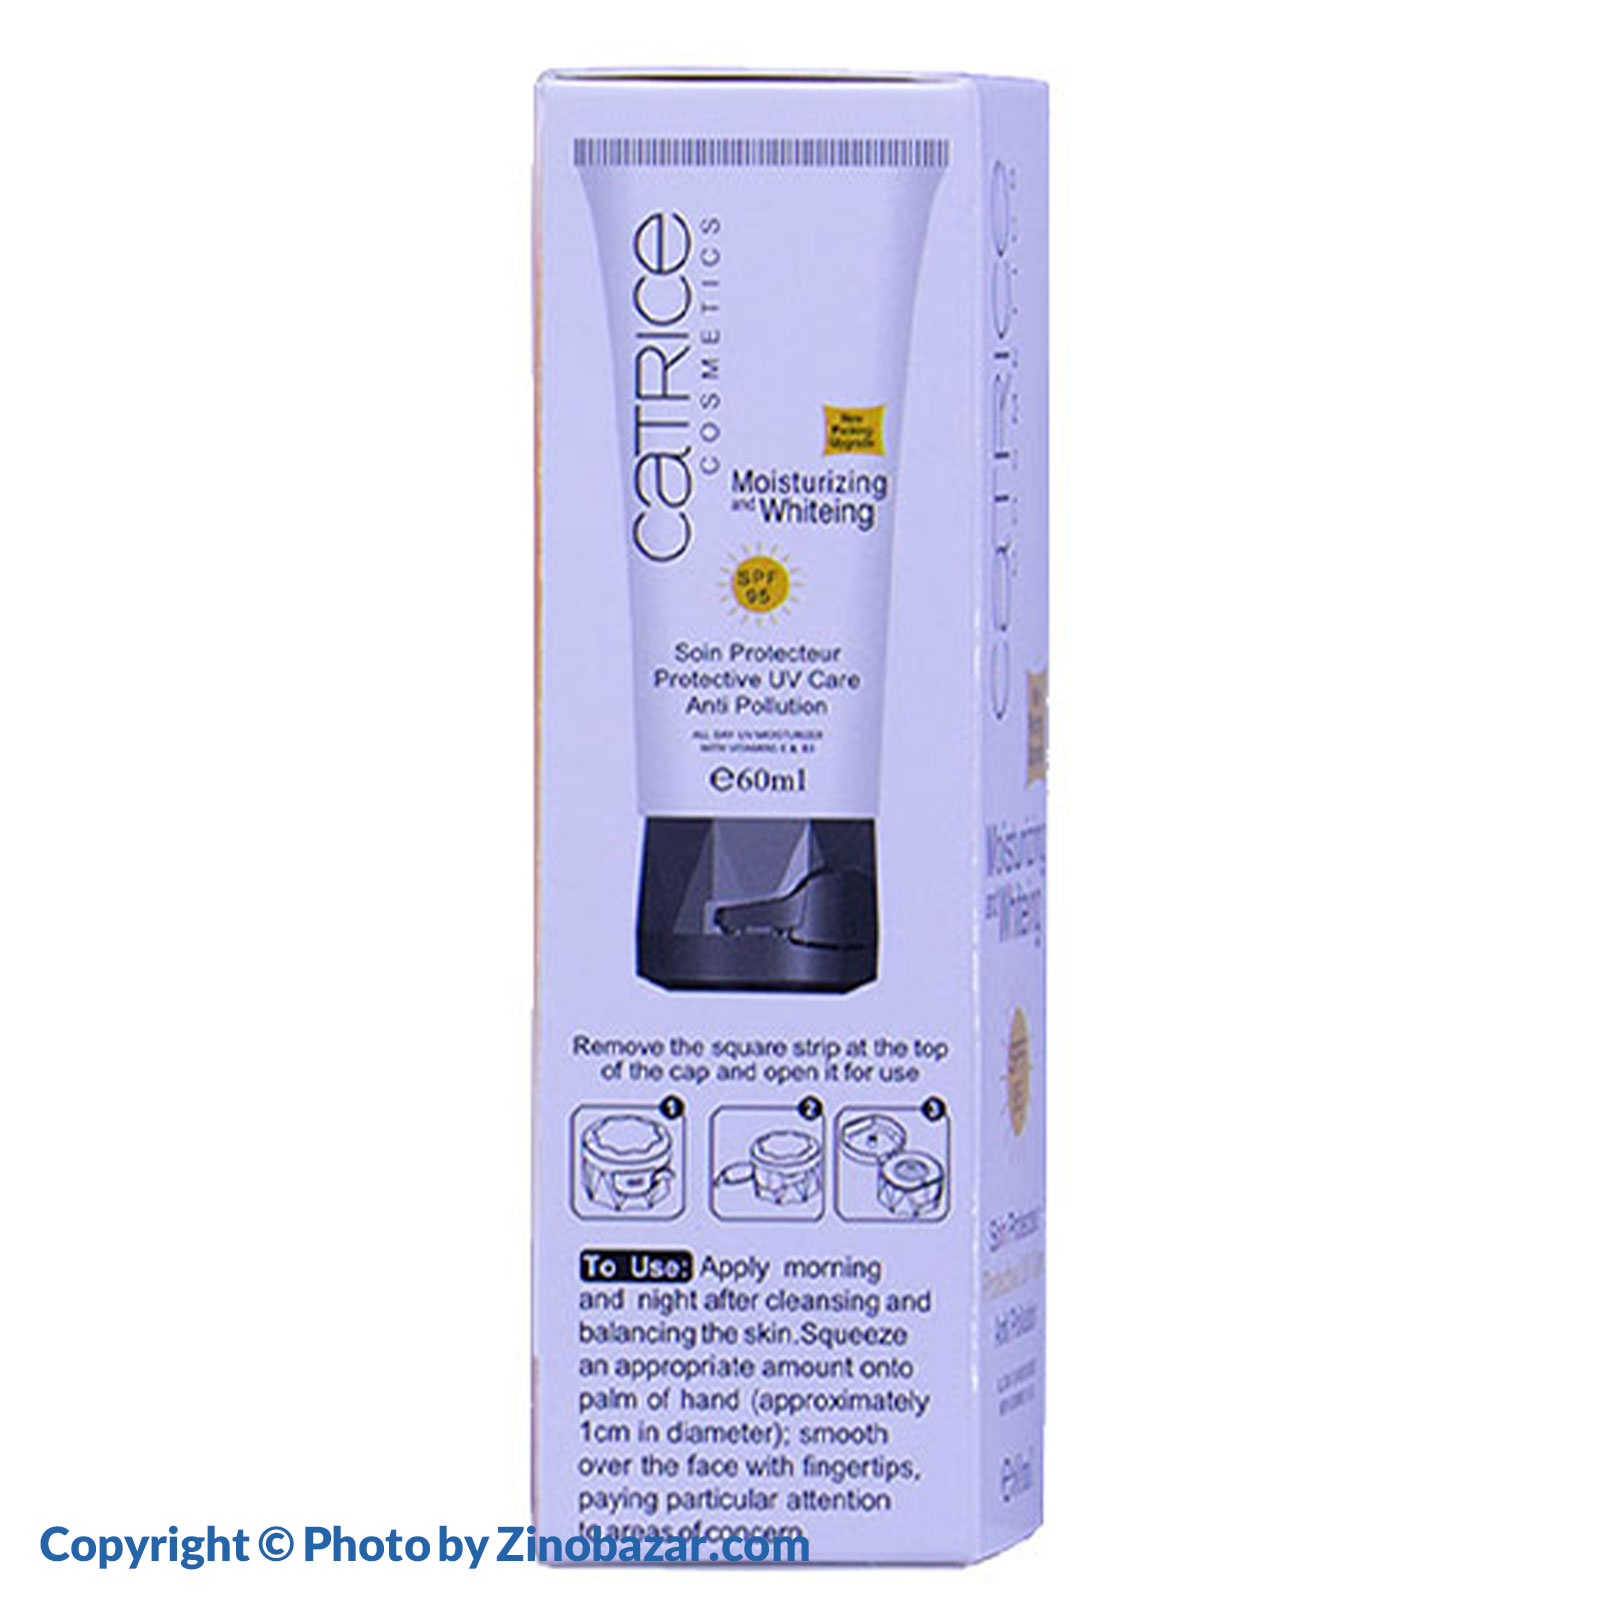 ضد آفتاب SPF95 مرطوب کننده و سفید کننده 60 میلی لیتر کاتریس - زینو بازار ZinoBazar